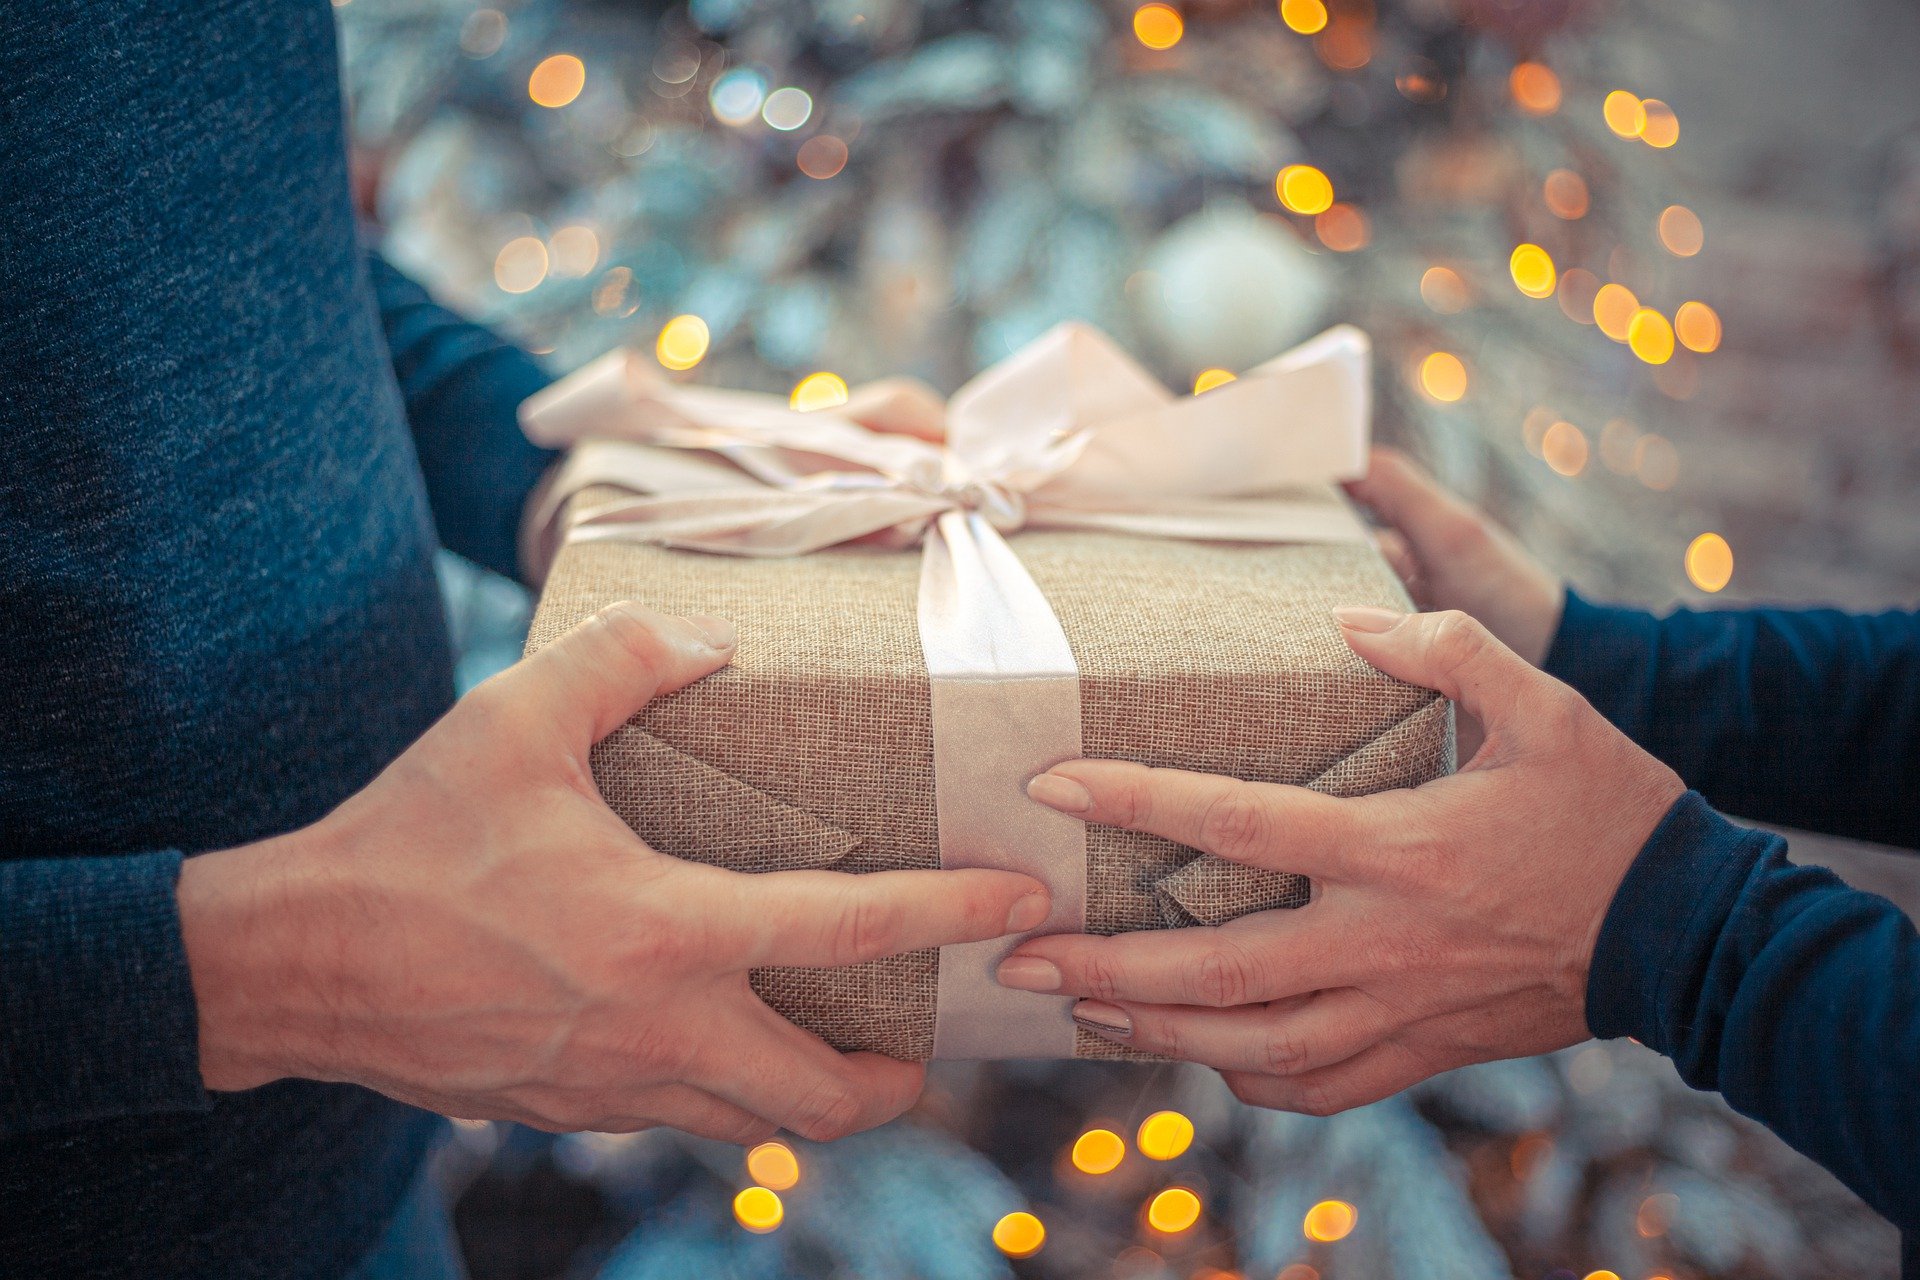 Lojas são obrigadas a trocar presentes de natal? Saiba o que diz a lei